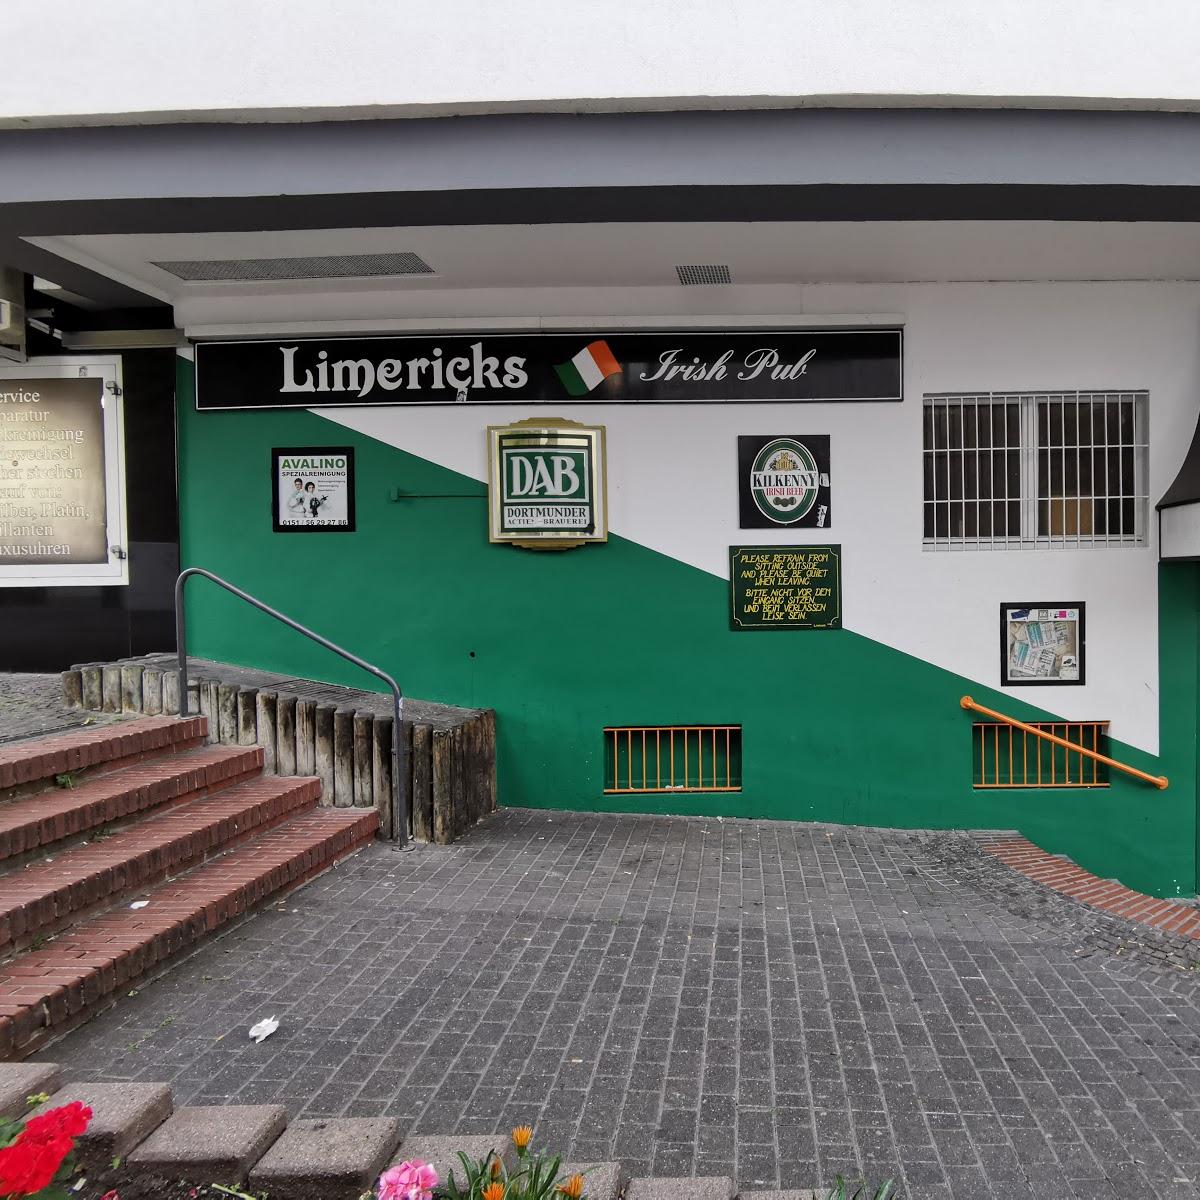 Restaurant "Limericks" in Paderborn